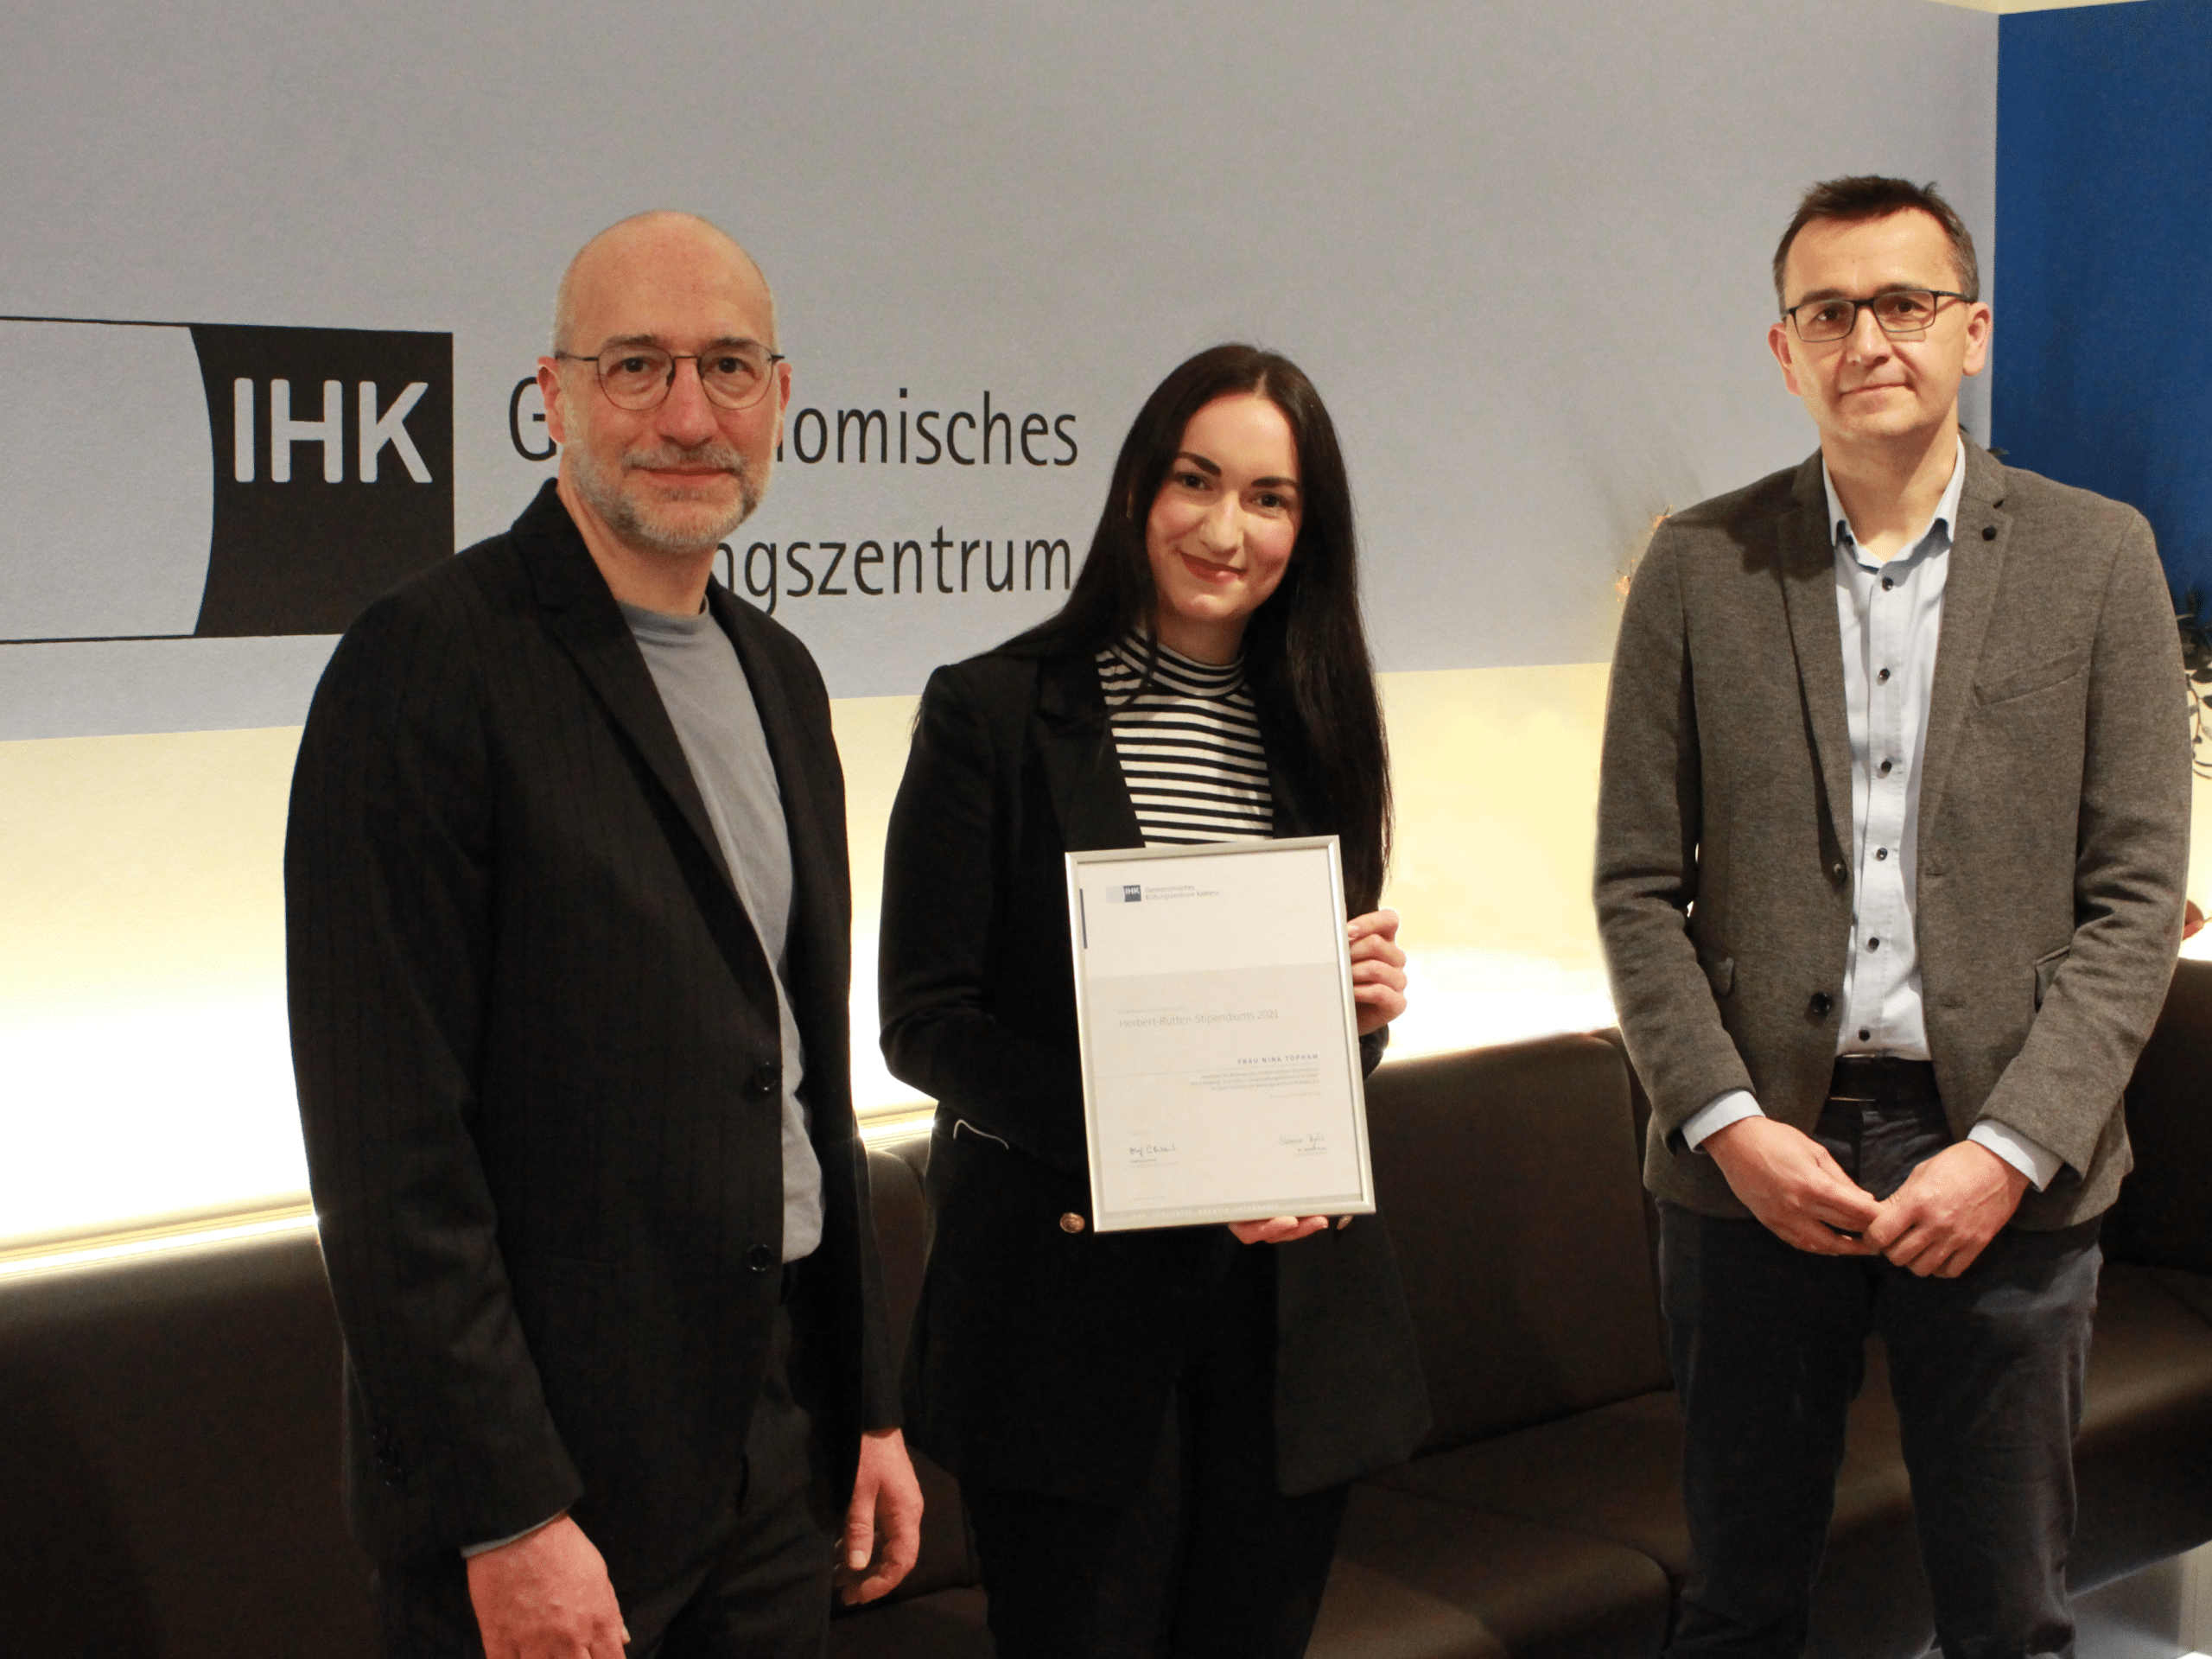 Preisträgerin des Herbert-Rütten-Stipendiums im Jahr 2021 ist Nina Topham. Das Herbert-Rütten-Stipendium wird an engagierte Nachwuchstalente aus Hotellerie und Gastronomie verliehen.